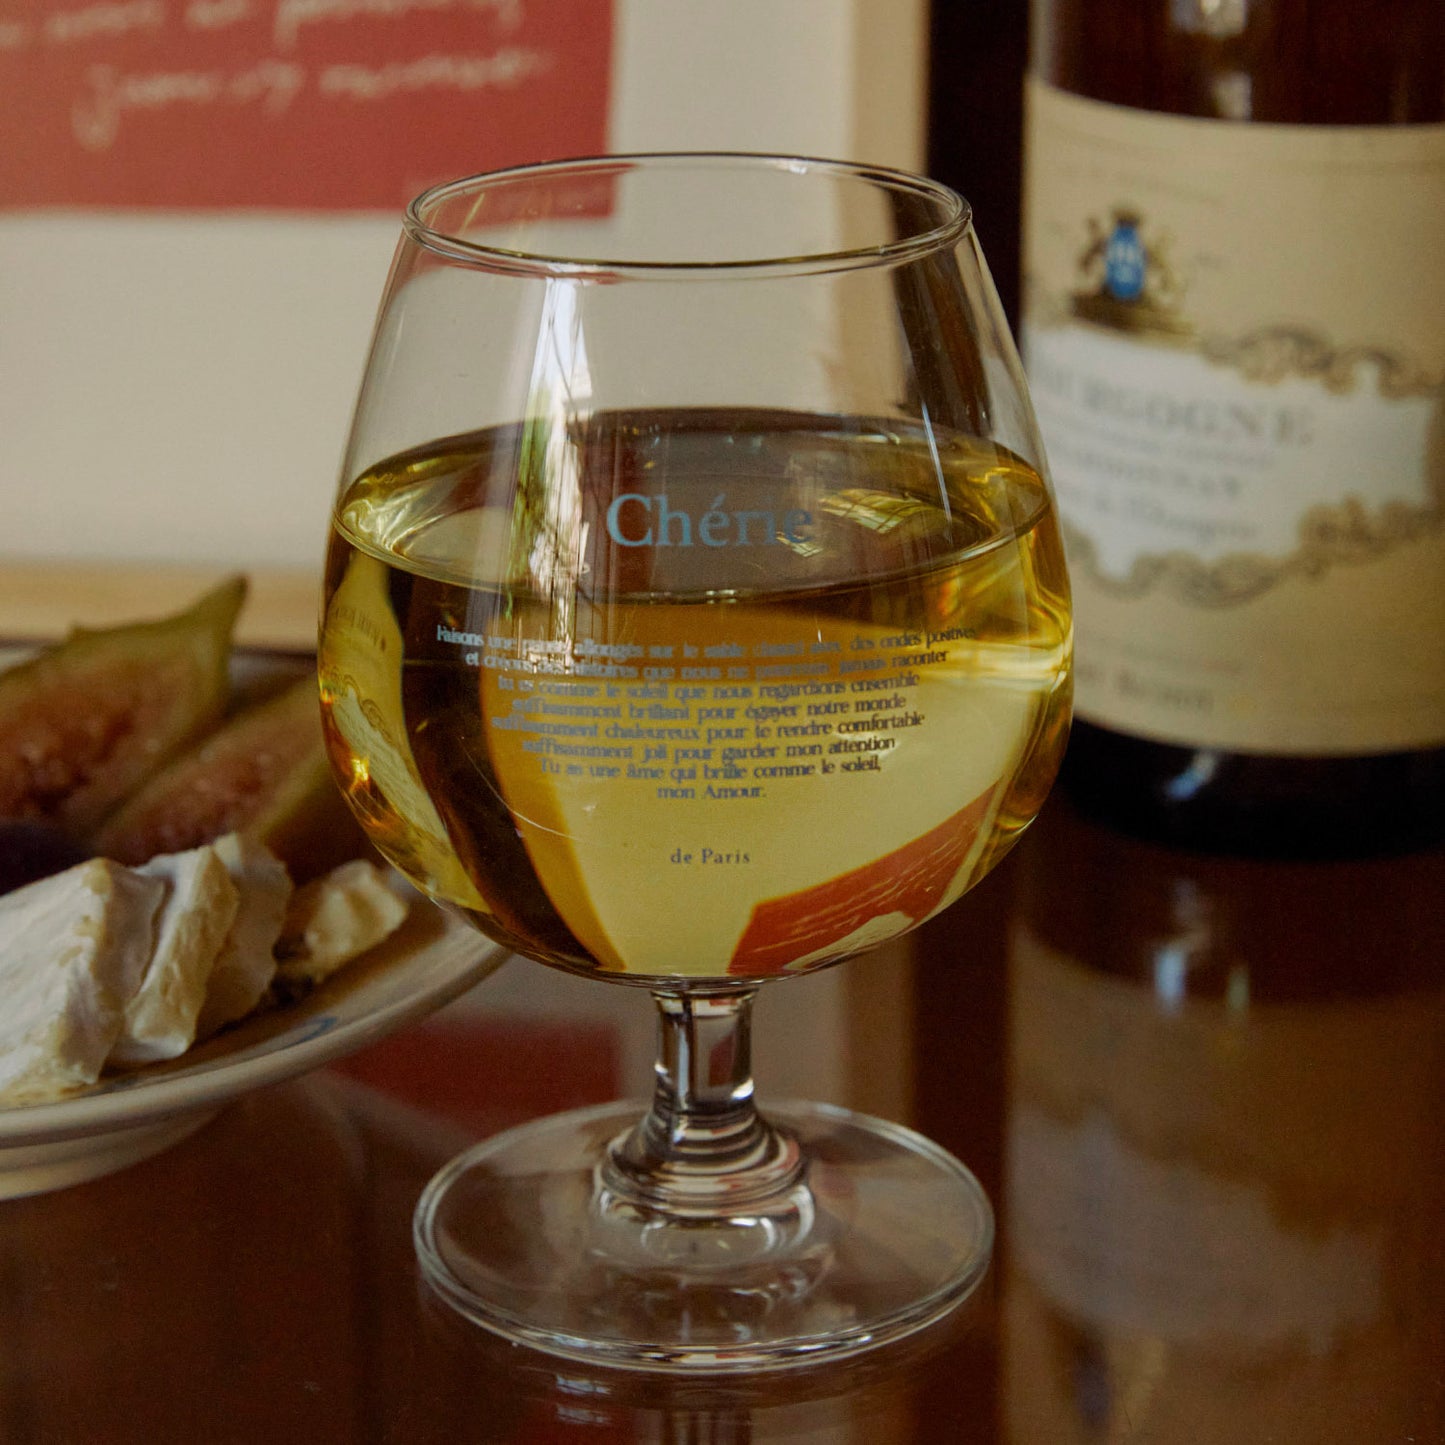 Chèrie Wine Glass